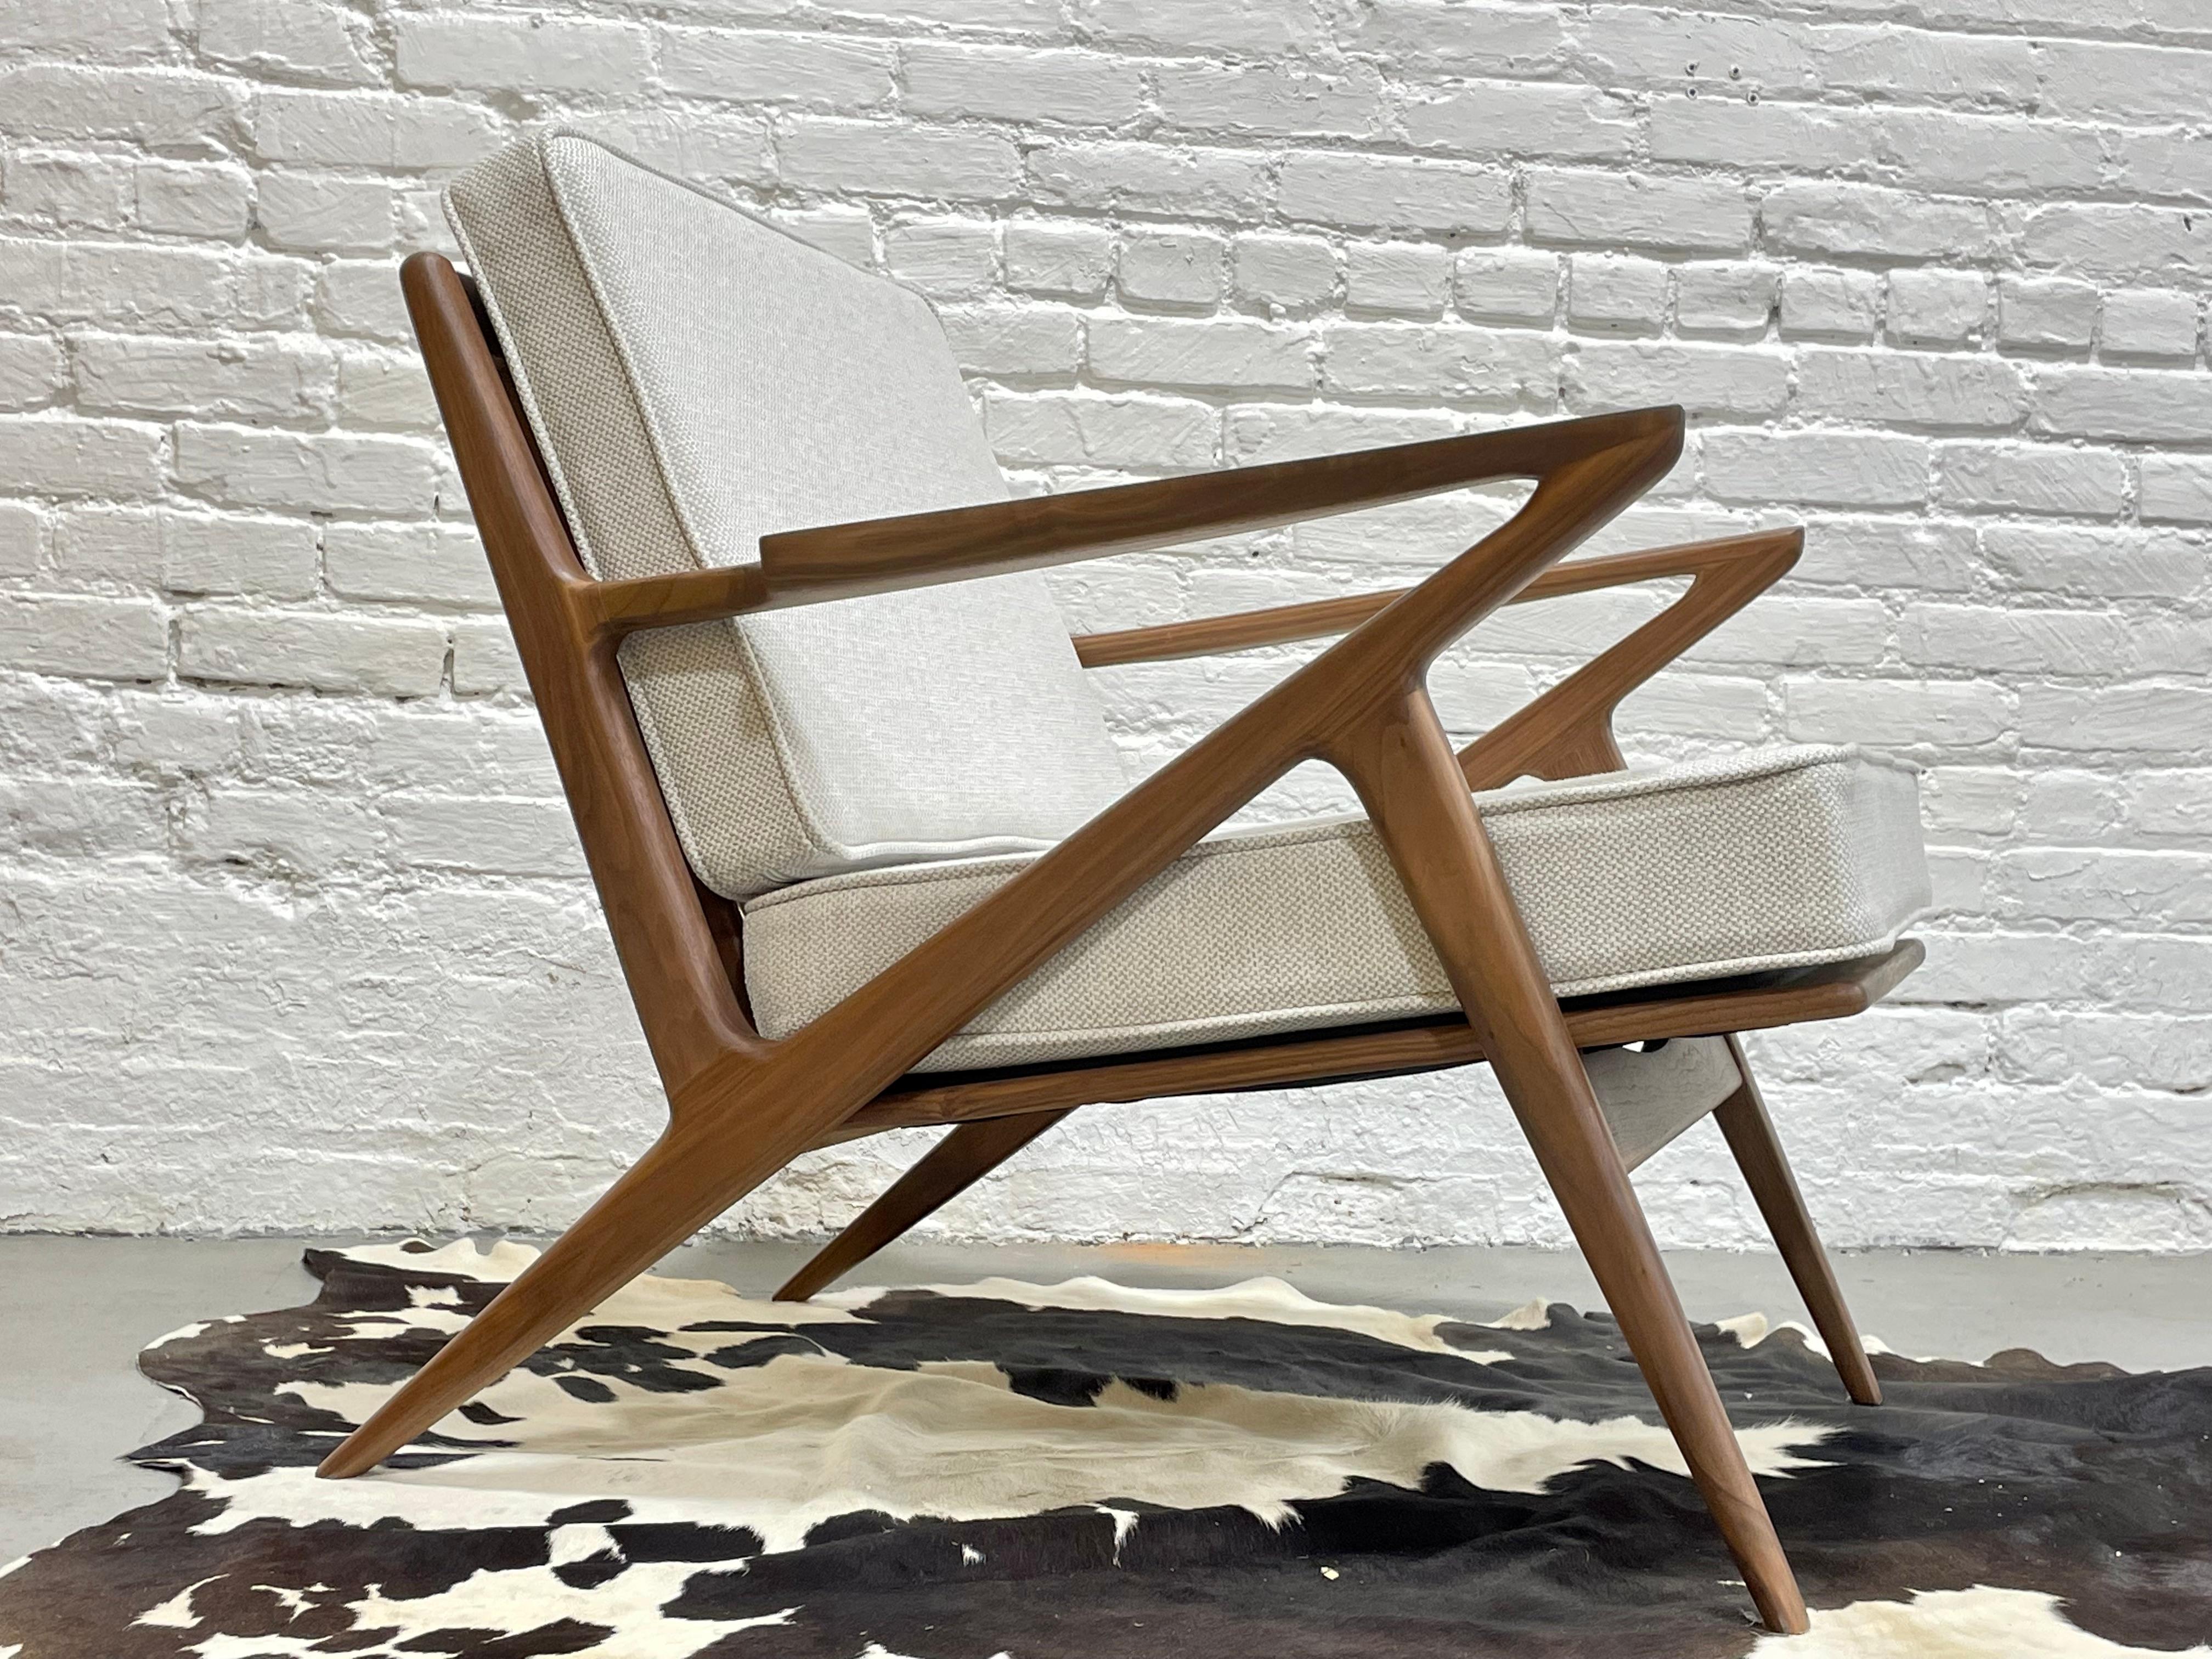 Loungesessel im Stil des Mid Century Modern, in aufwändiger Handarbeit aus massivem amerikanischem Nussbaumholz gefertigt und gestaltet. Dieser unglaubliche Stuhl bietet eine Fülle von Designdetails wie skulpturale Armlehnen, dreieckige Rückenlatten